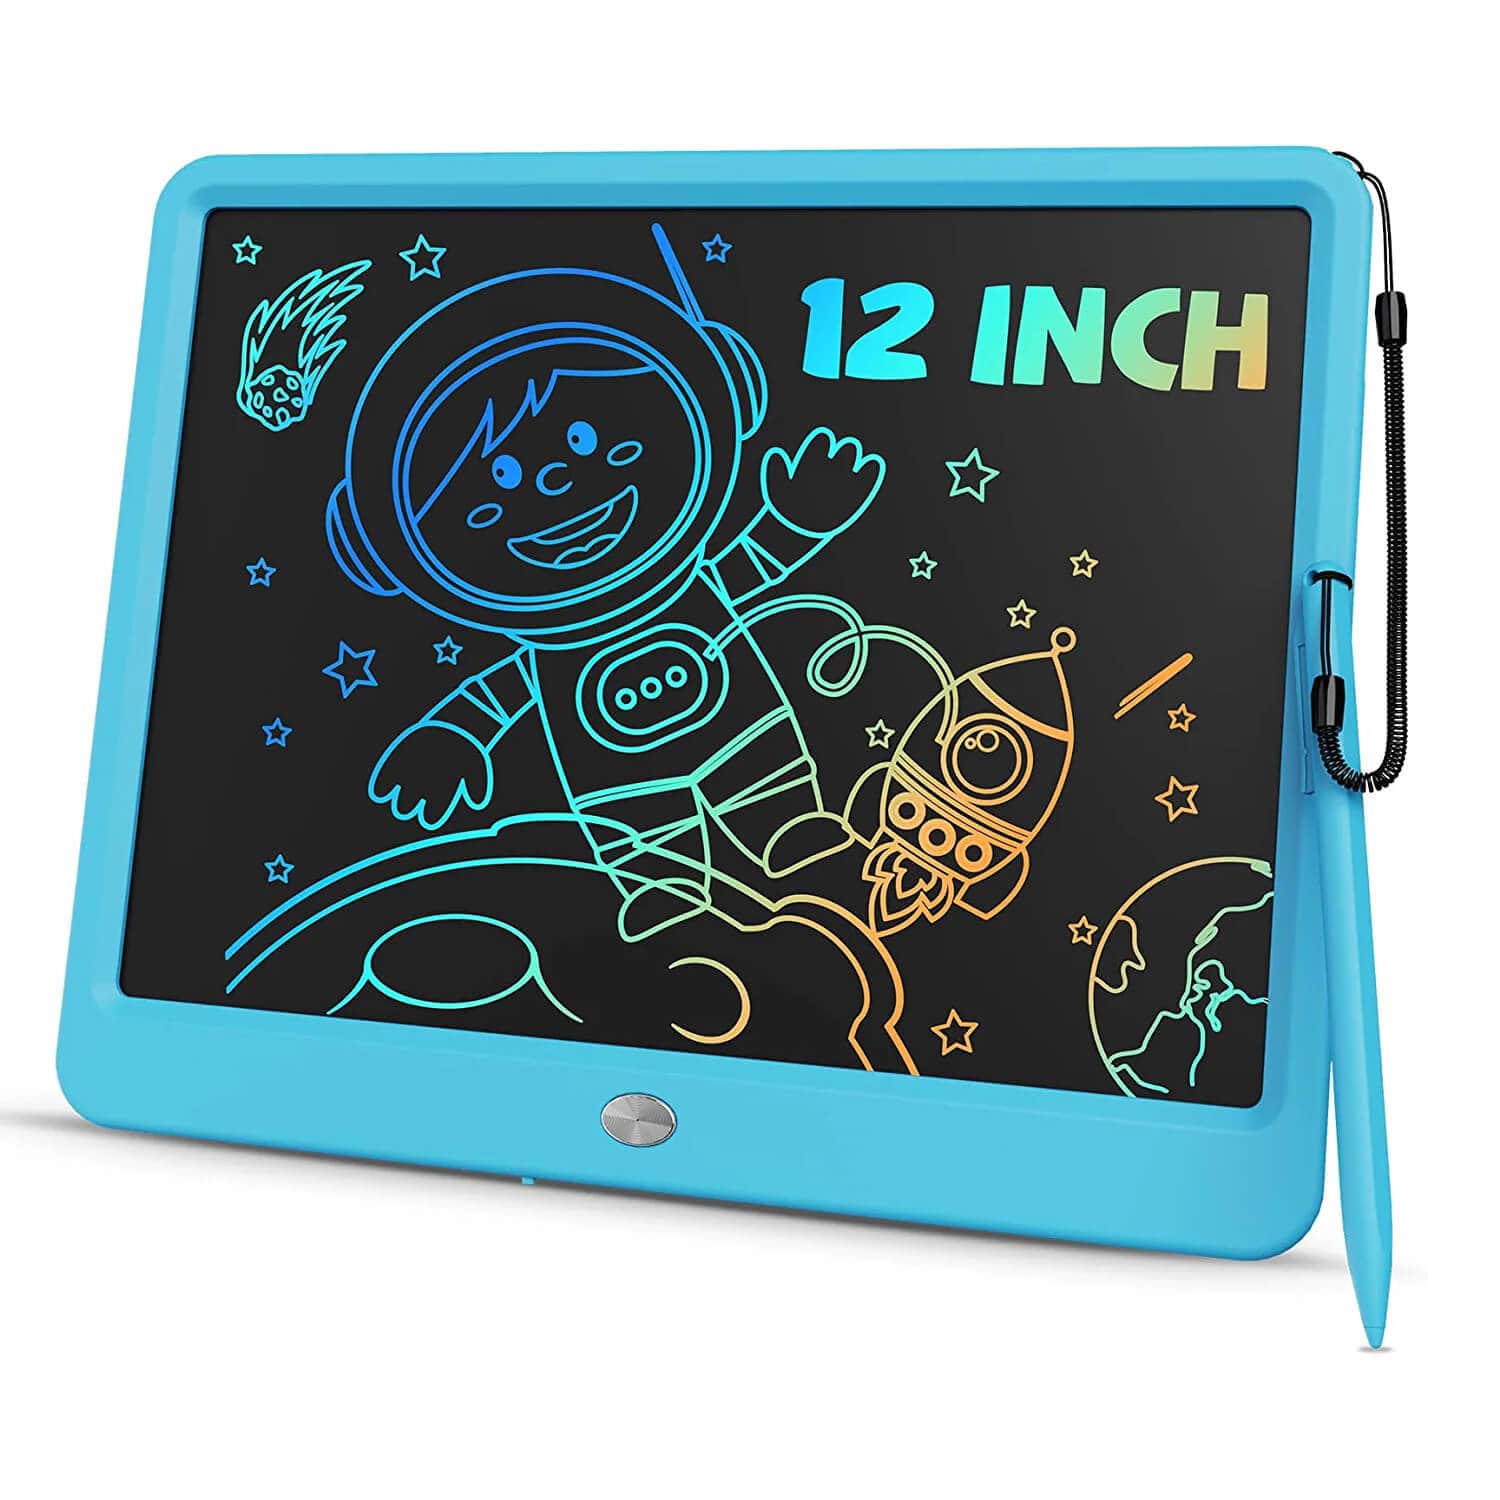 TEKFUN Large Screen 12inch LCD Writing Tablet with Anti-Lost Stylus, Erasable Doodle Board No Mess Drawing Pad - Mytekfun